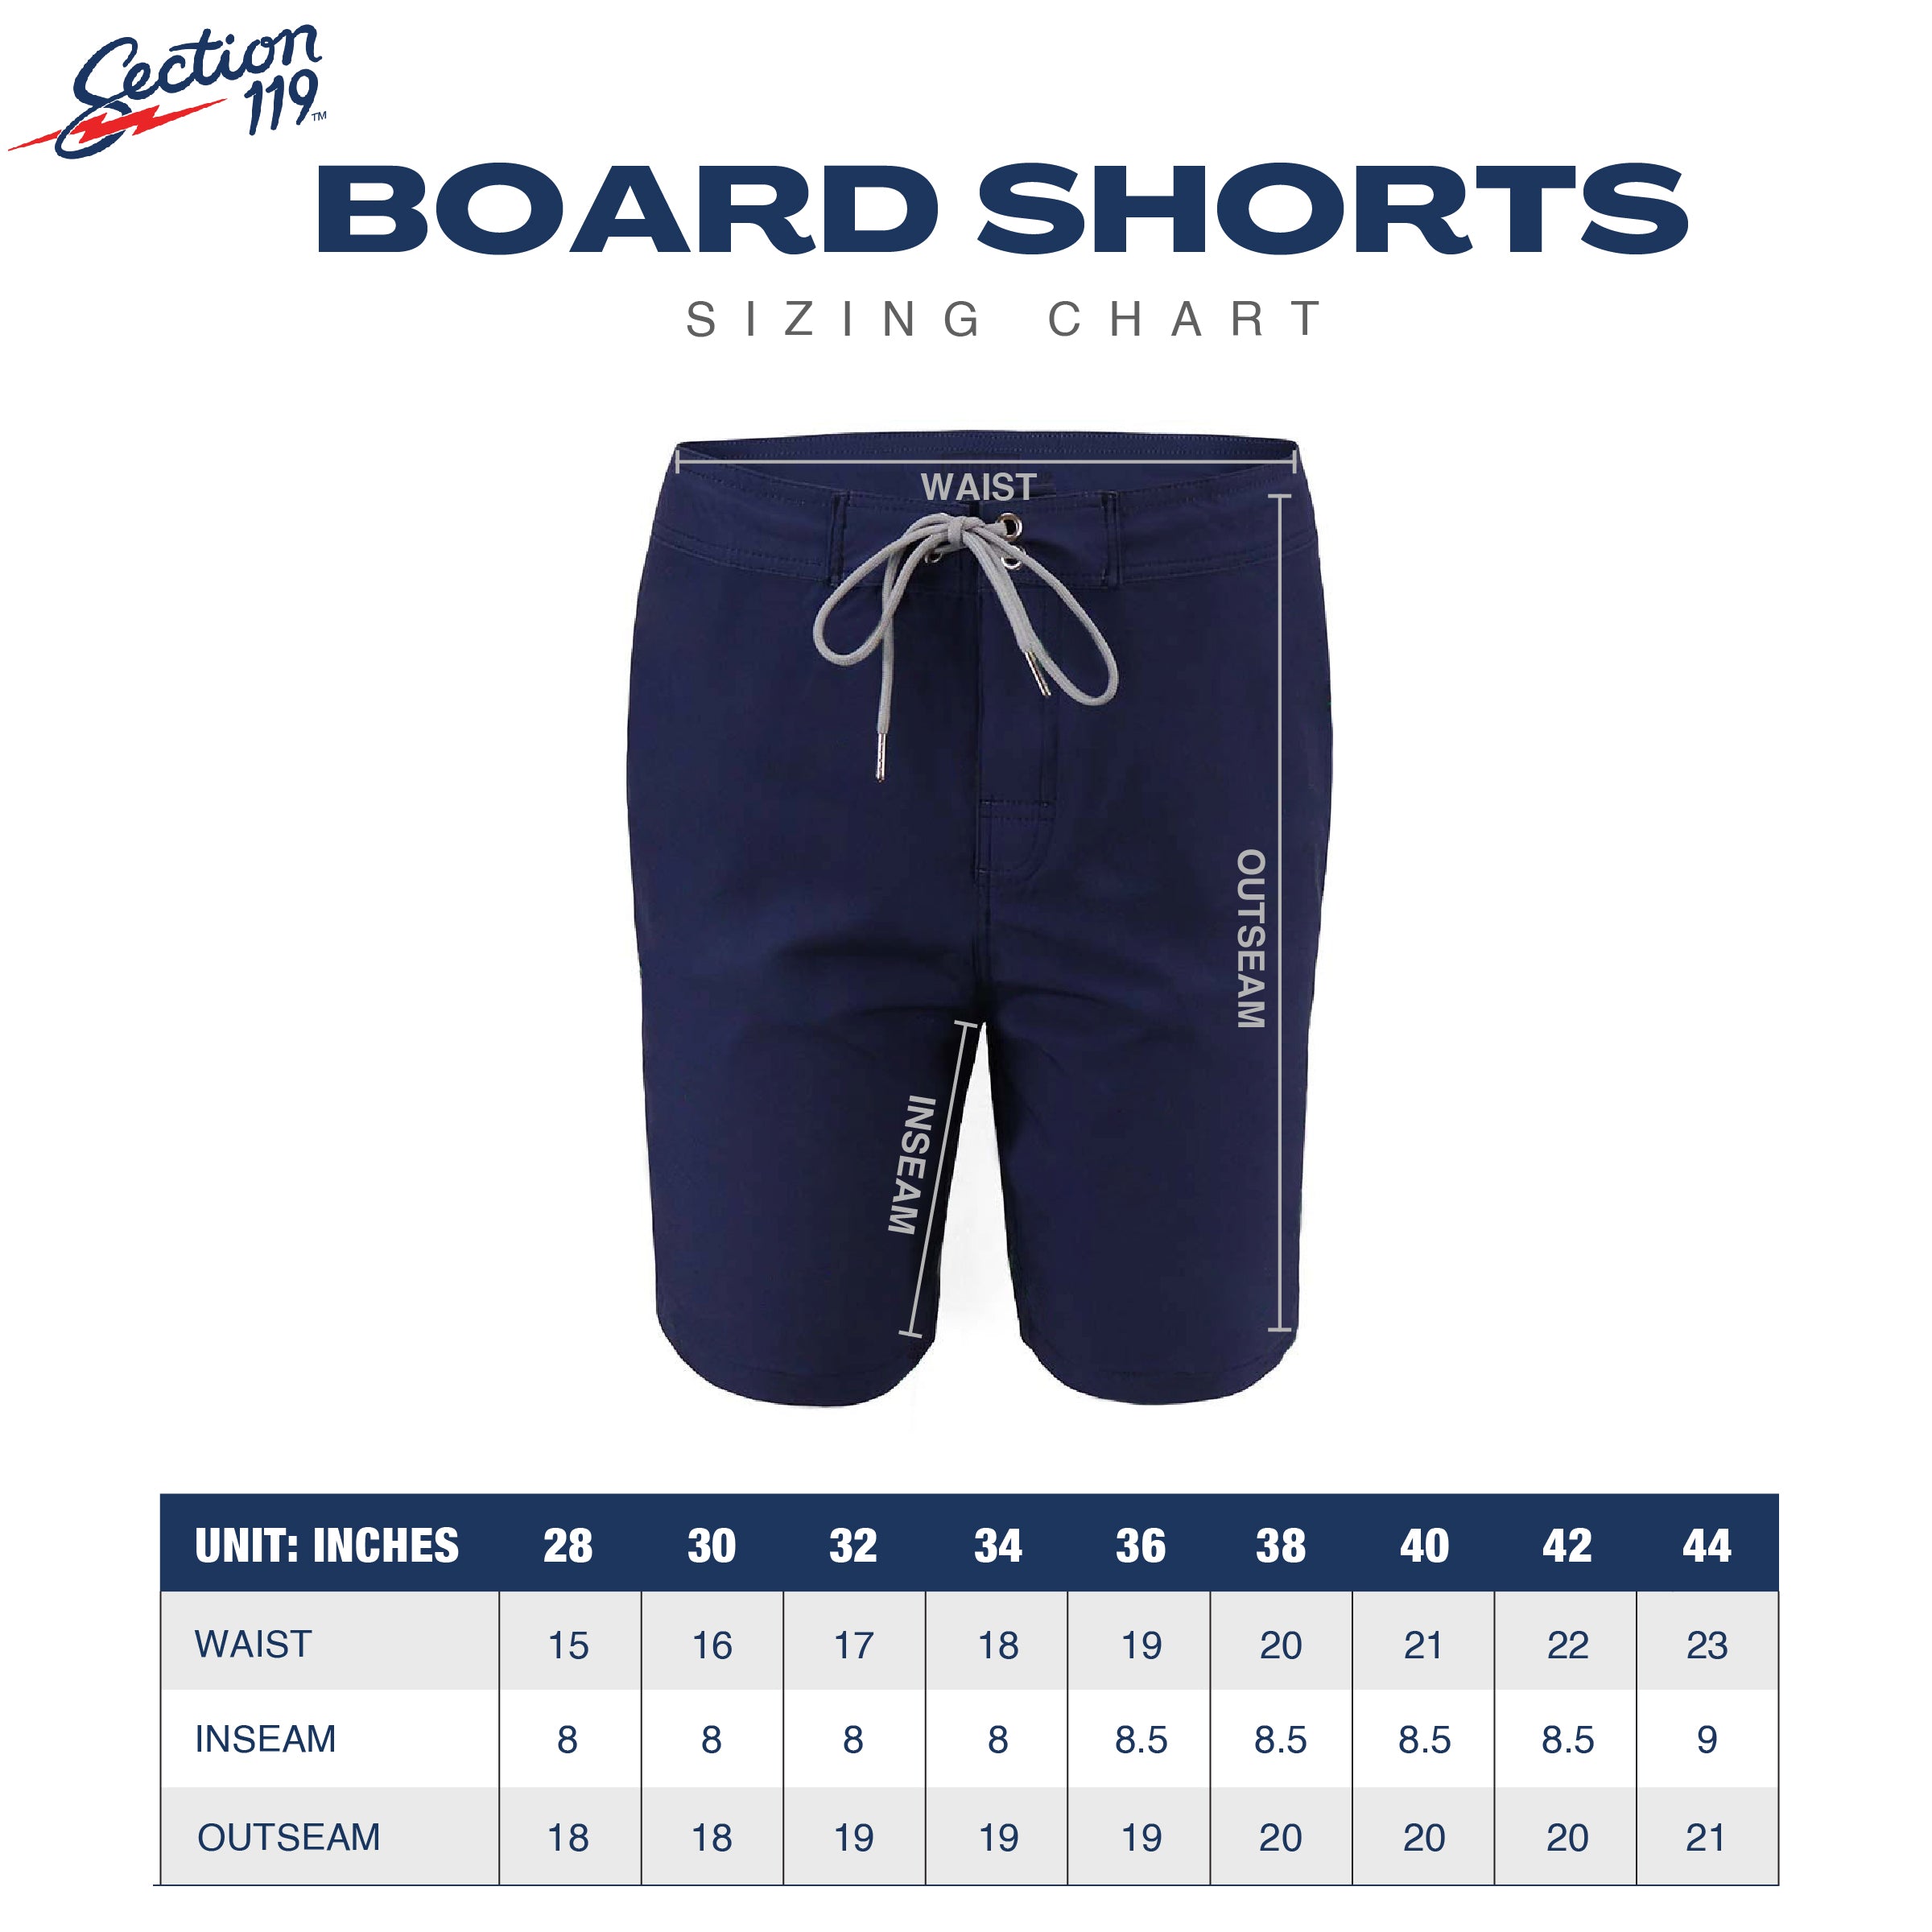 Morning Sunshine Board Shorts - Section 119